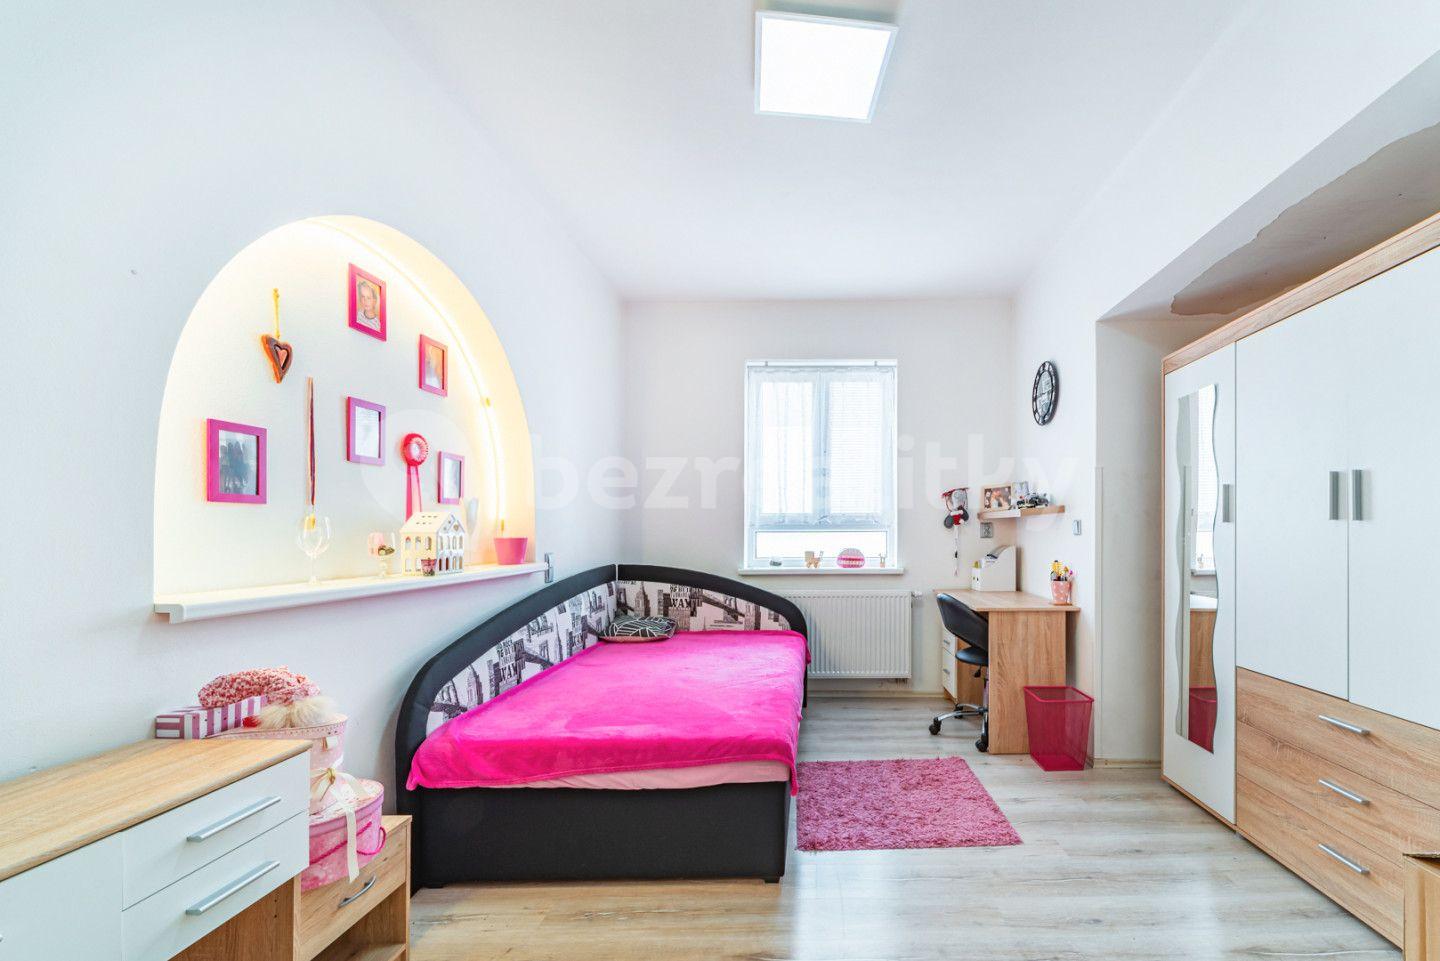 3 bedroom with open-plan kitchen flat for sale, 110 m², Pivovarská, Cheb, Karlovarský Region